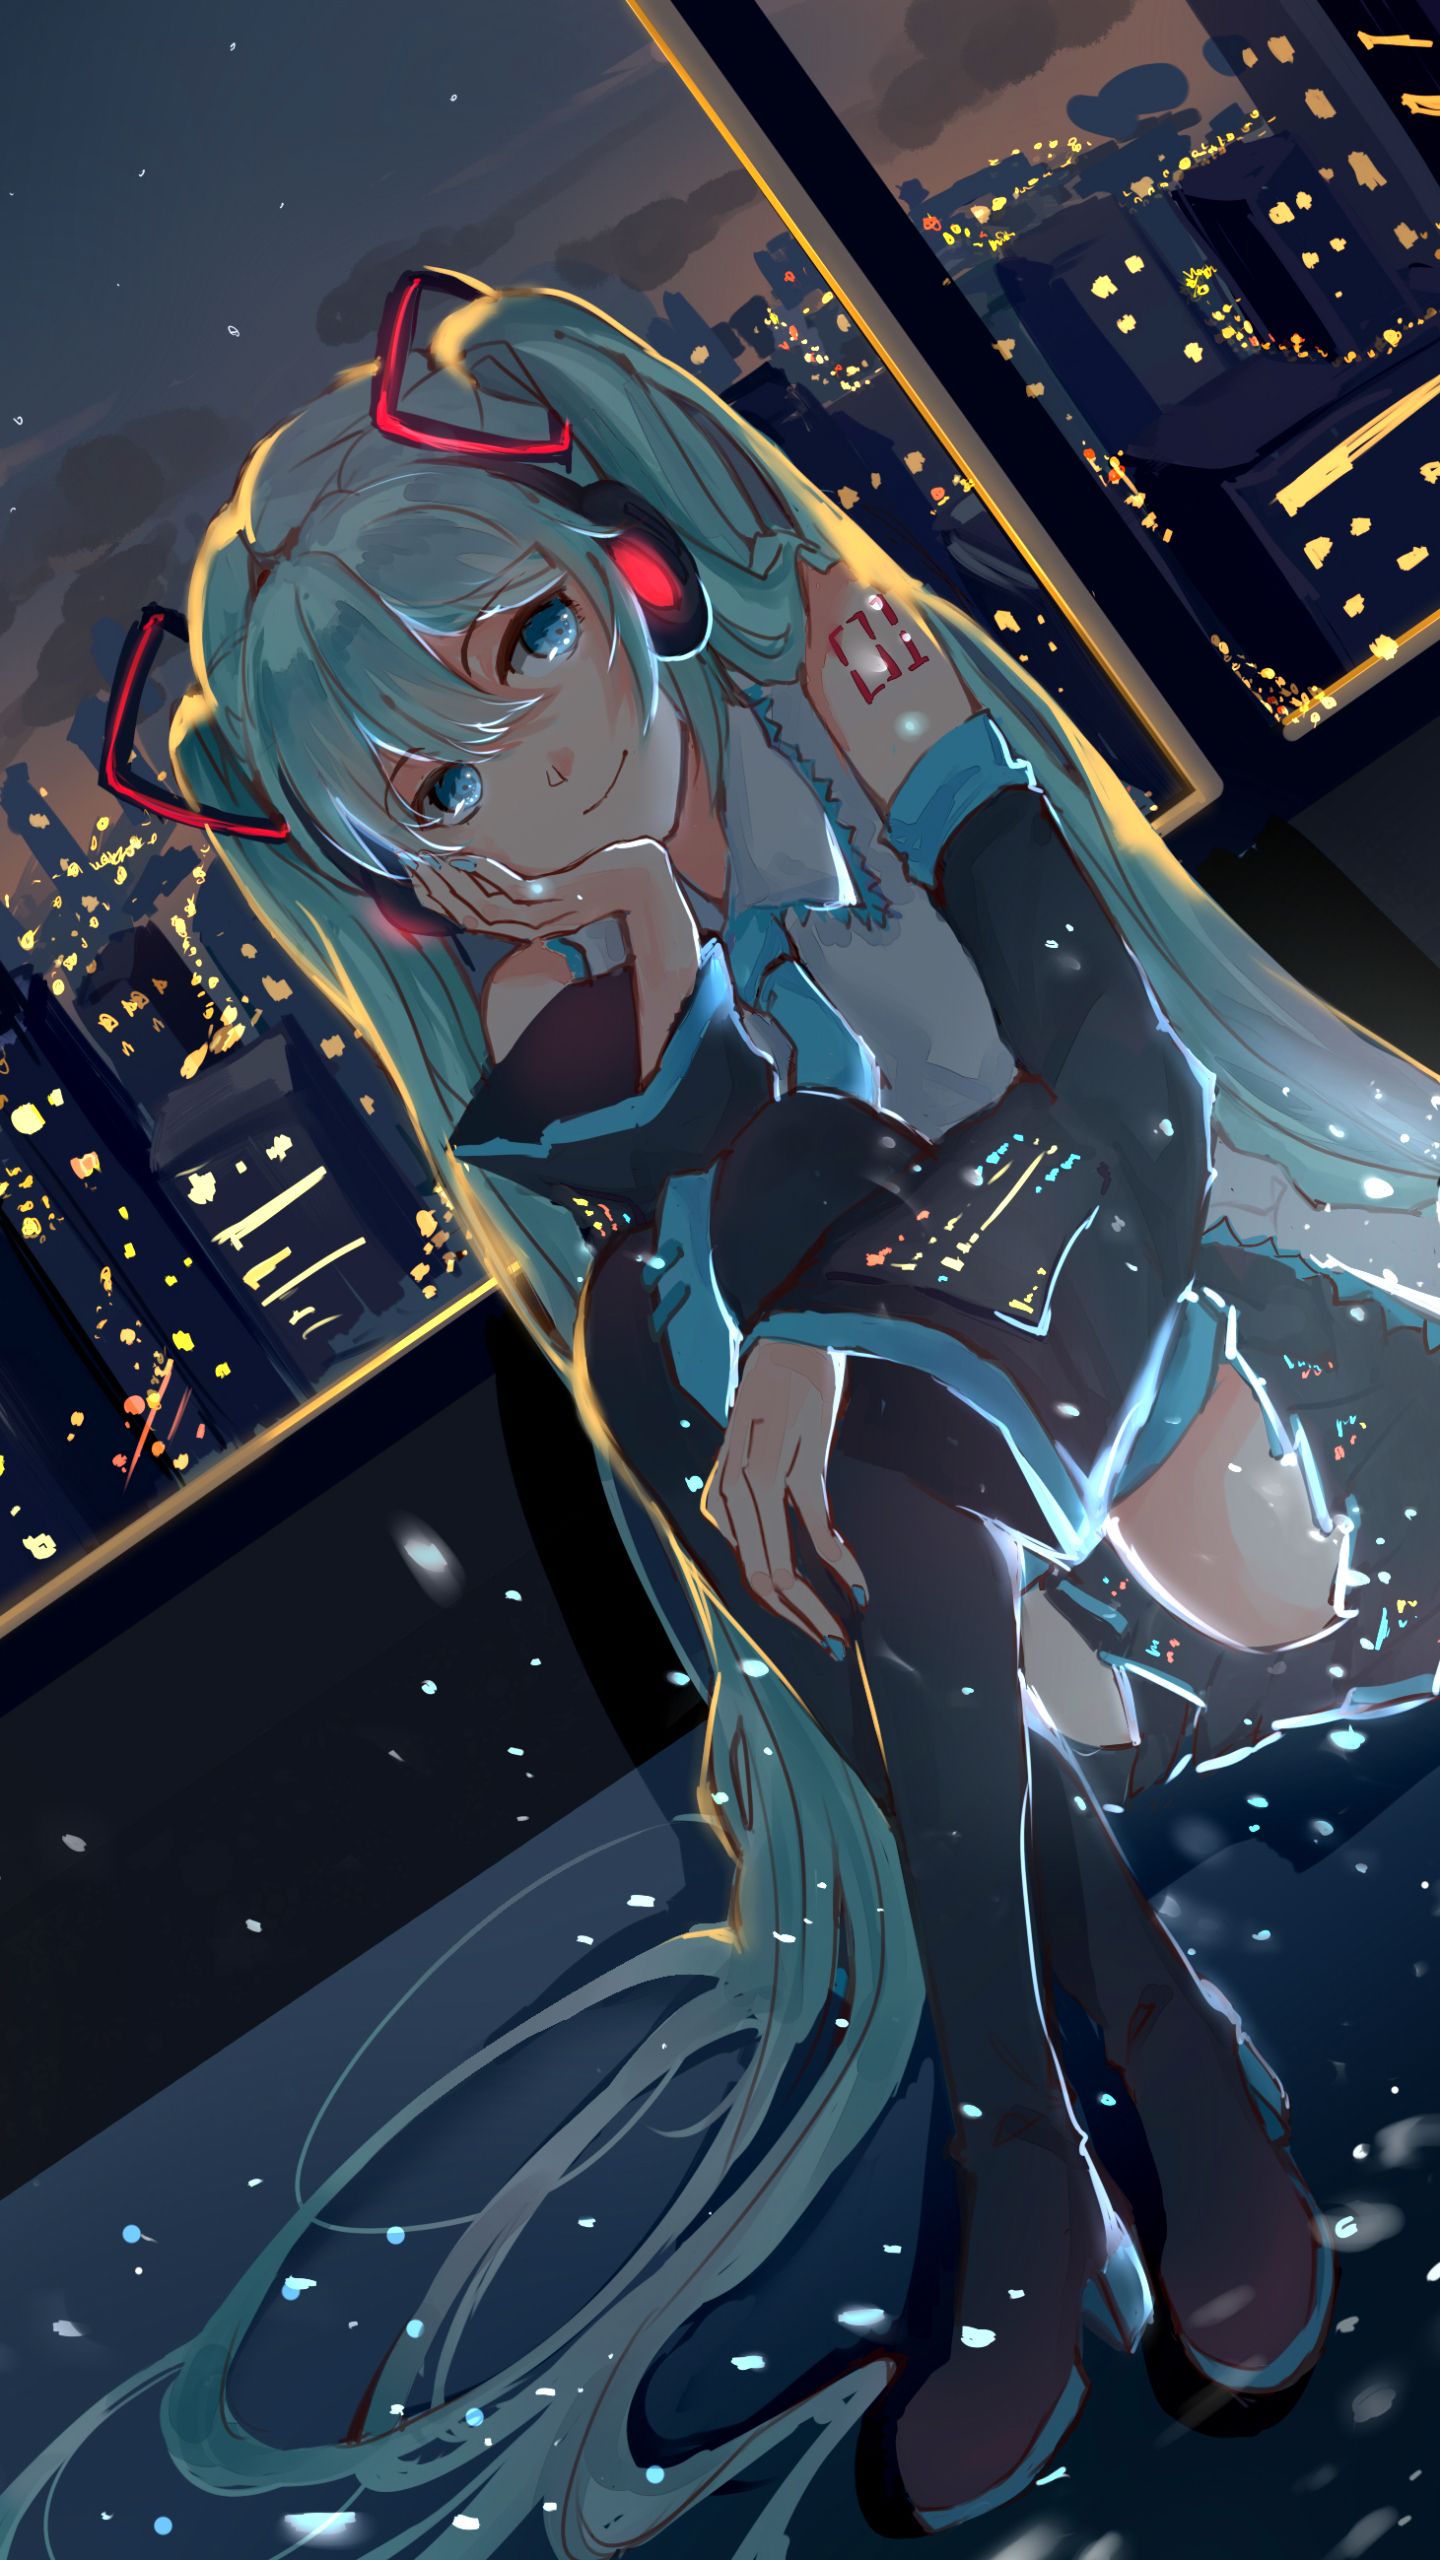 Anime Vocaloid (1440x2560) Wallpaper